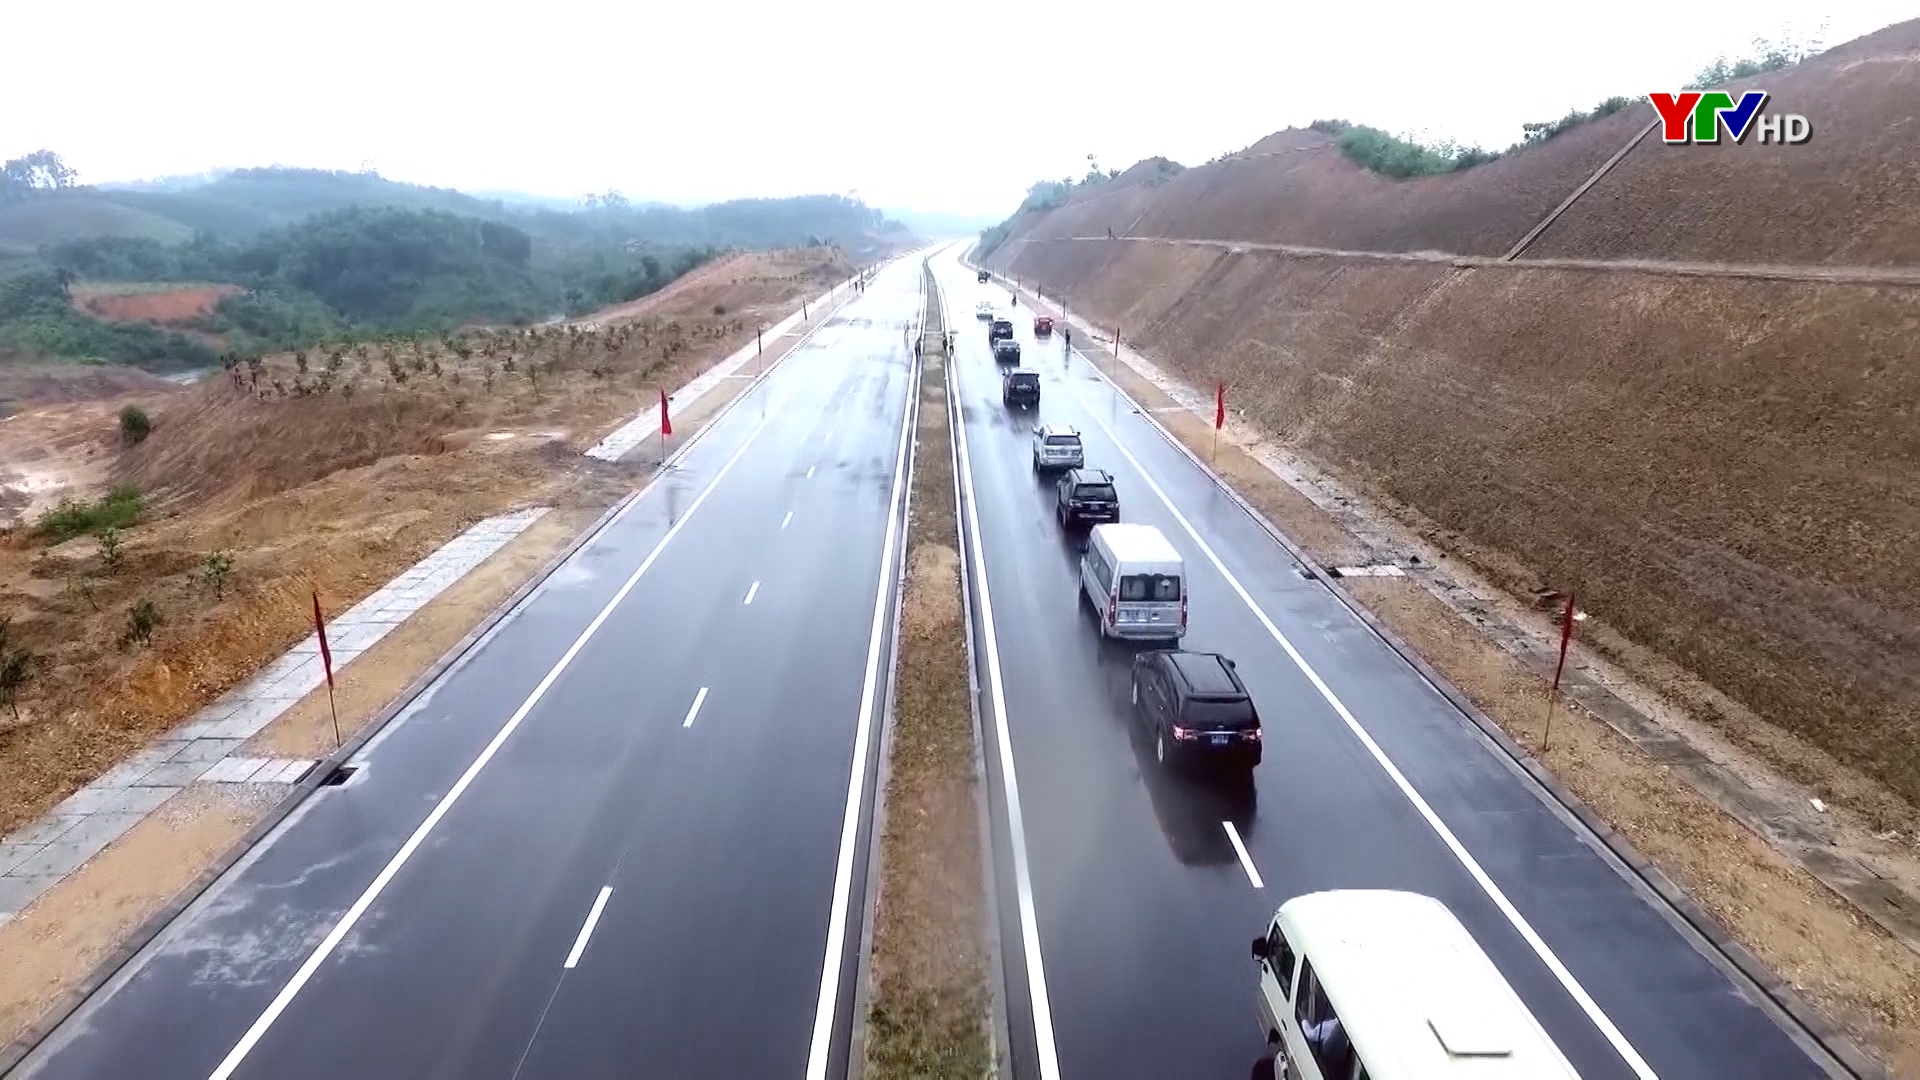 Đột phá về phát triển hạ tầng giao thông ở Yên Bái